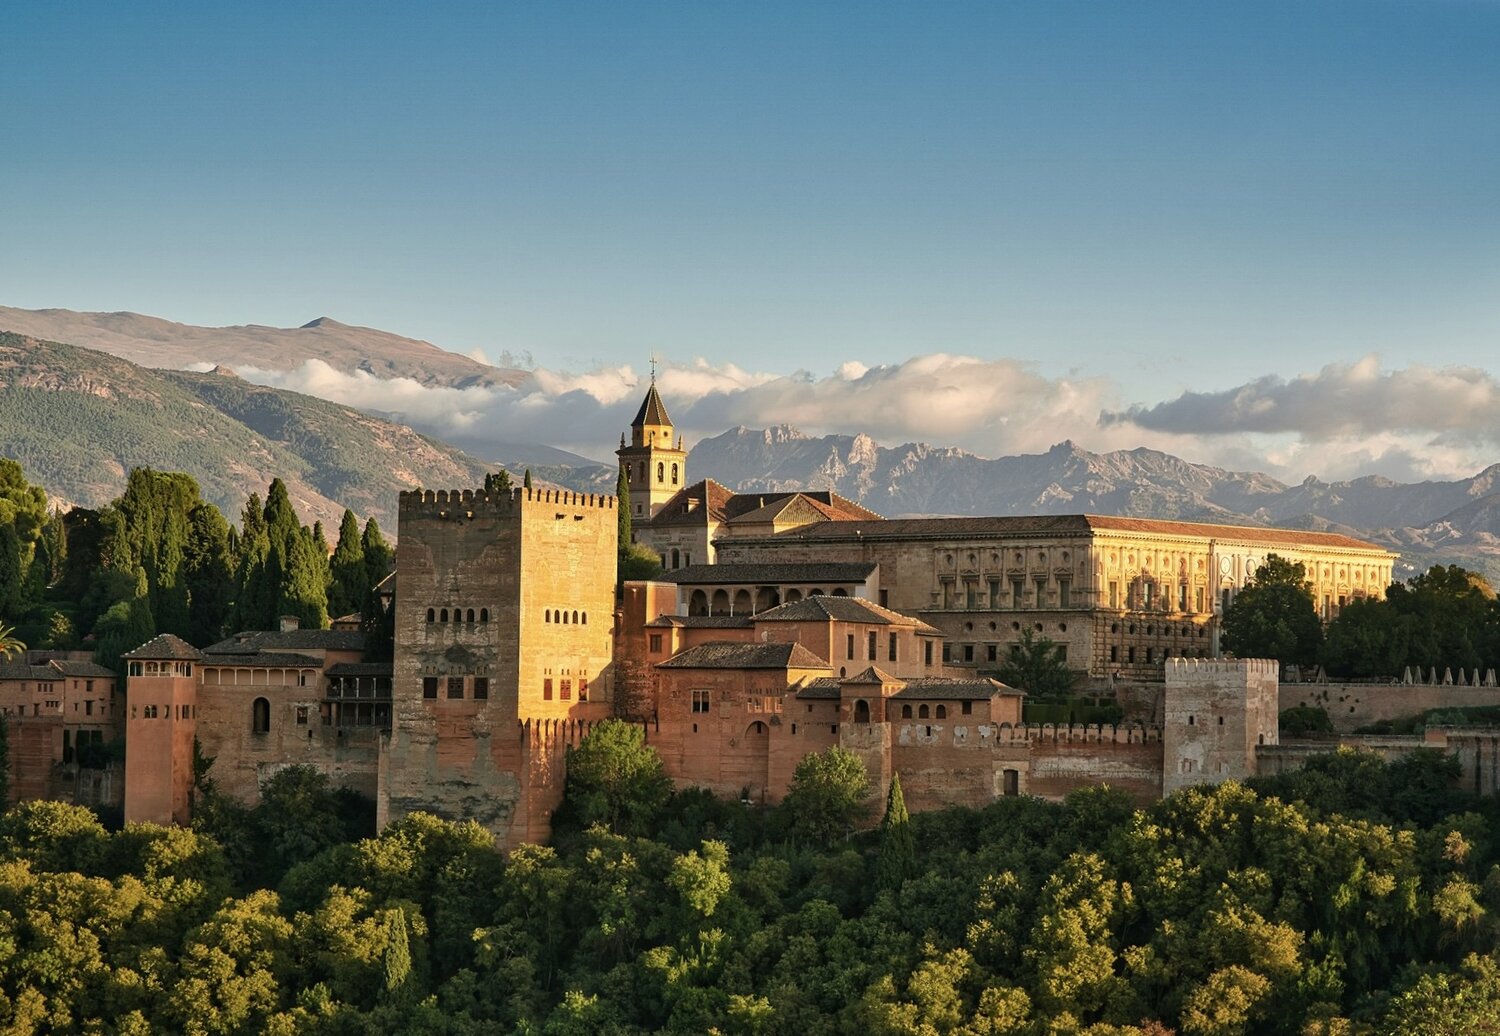 Granada - Spain's most beautiful city